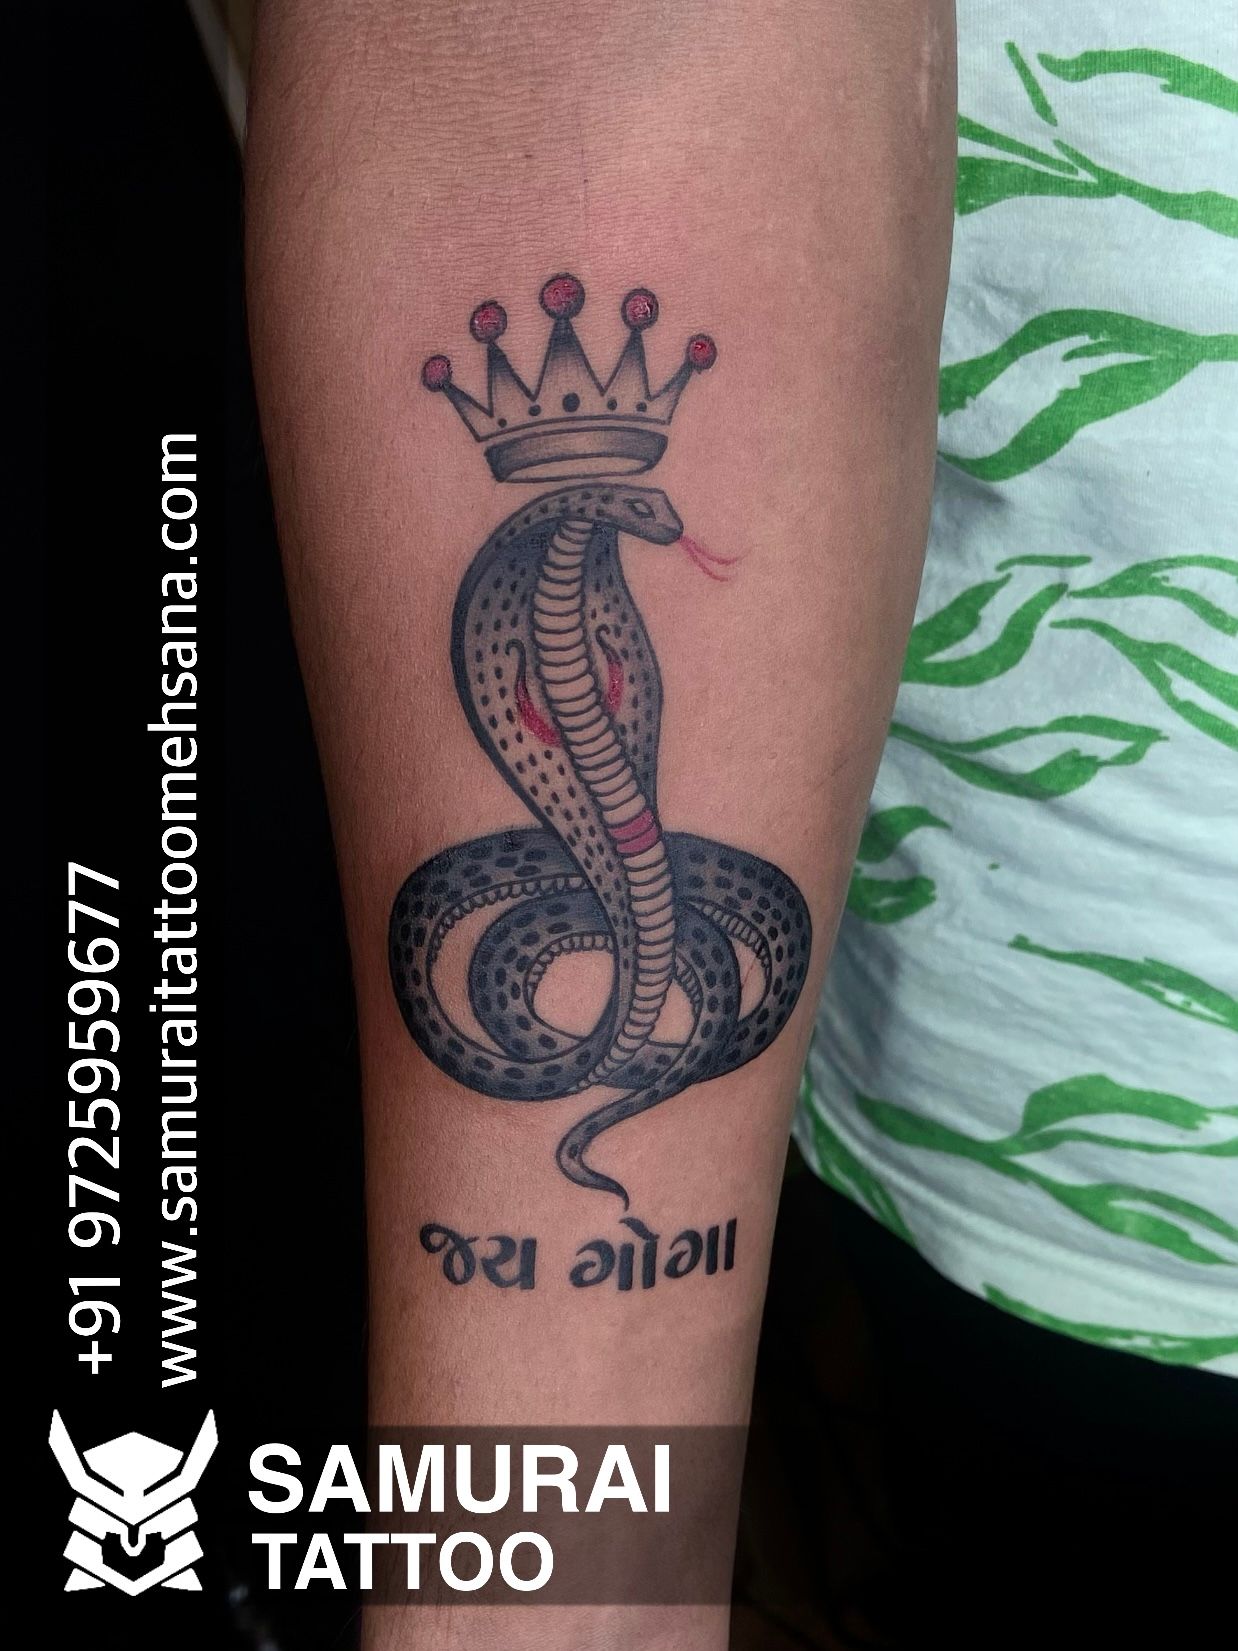 goga maharaj tattoo |gogaji tattoo |samurai tattoo mehsana |9725959677 |  Simple tattoos for women, Tattoos for women, Samurai tattoo